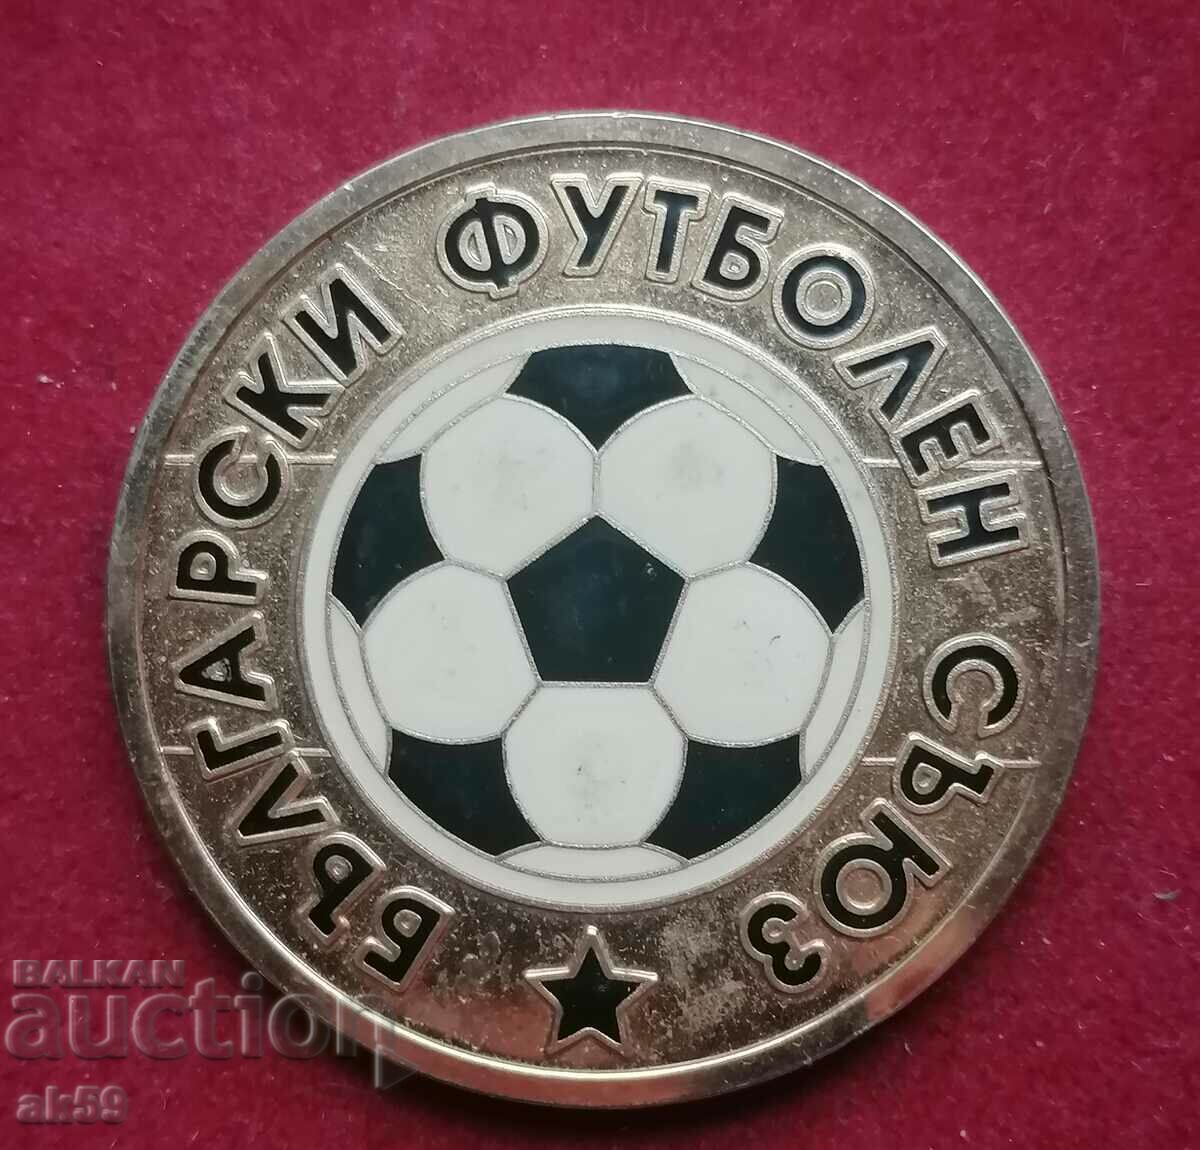 πλακέτα ποδοσφαίρου "Euro Portugal 2004"